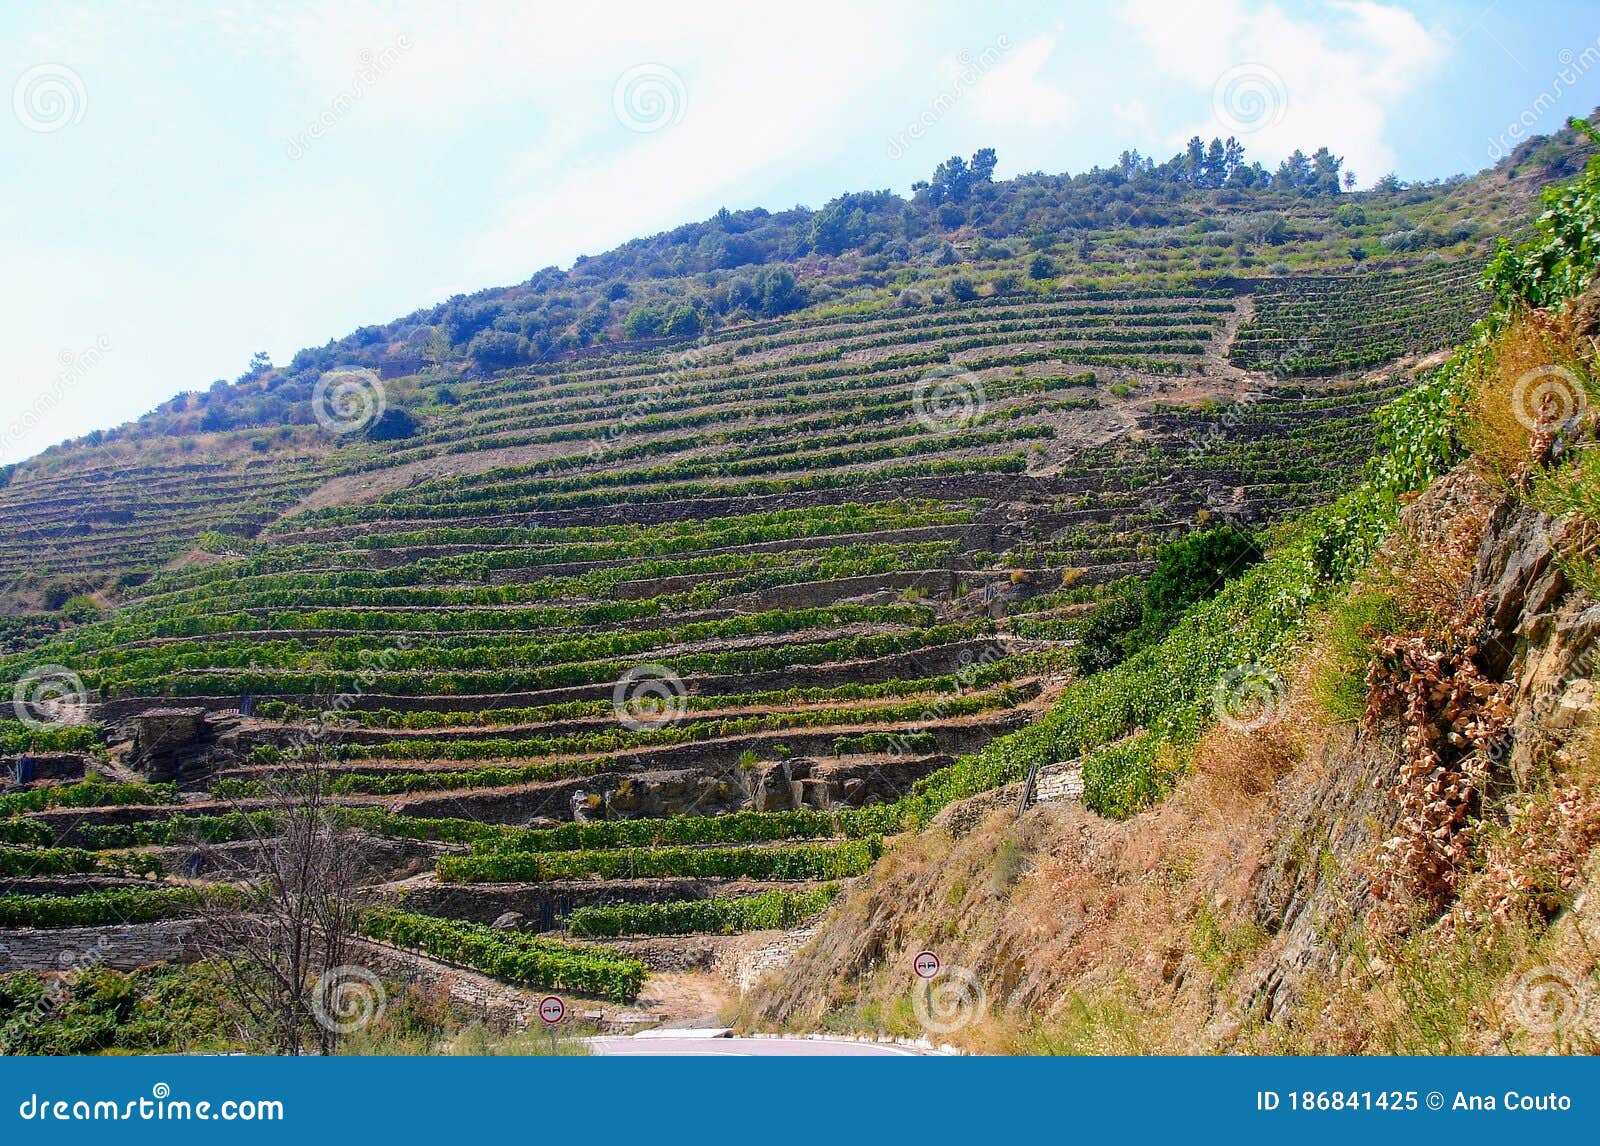 douro valley vineyards, in vila nova de foz coa